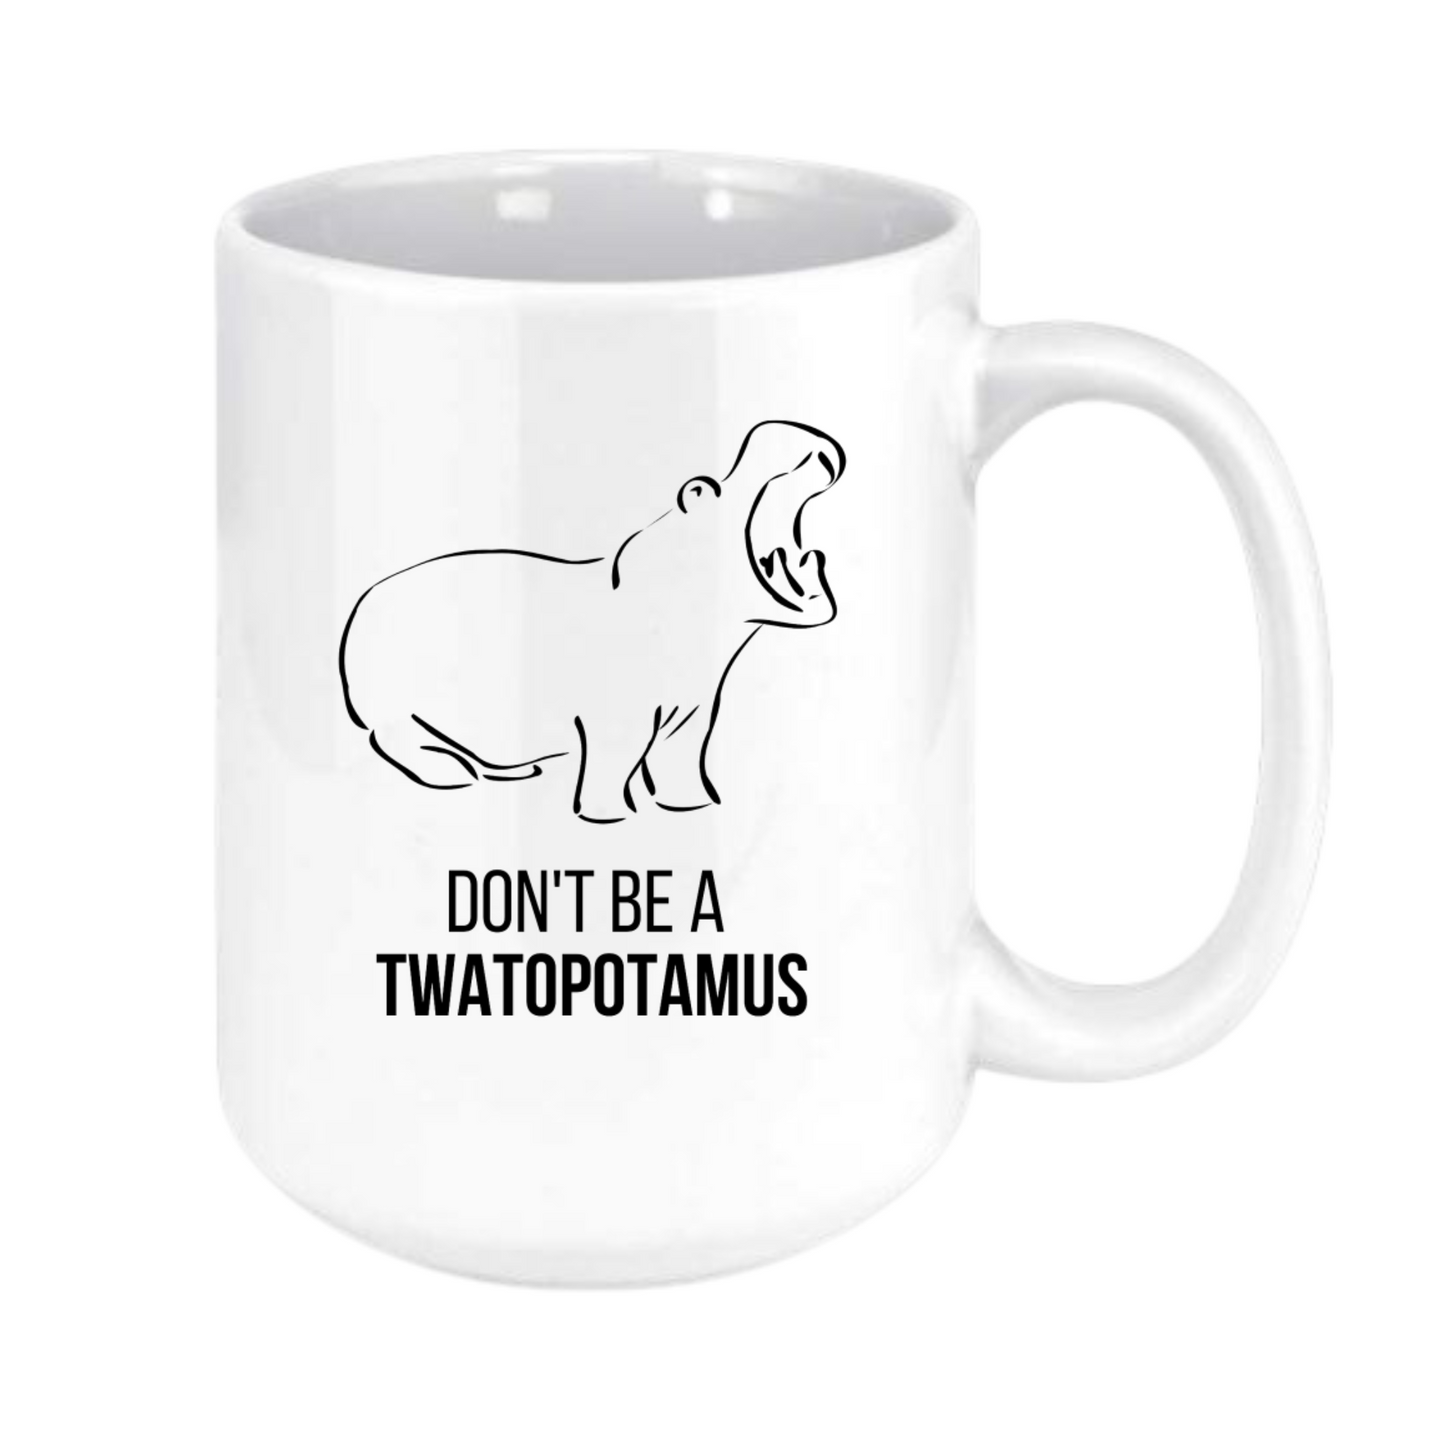 Don't be a twatopotamus mug